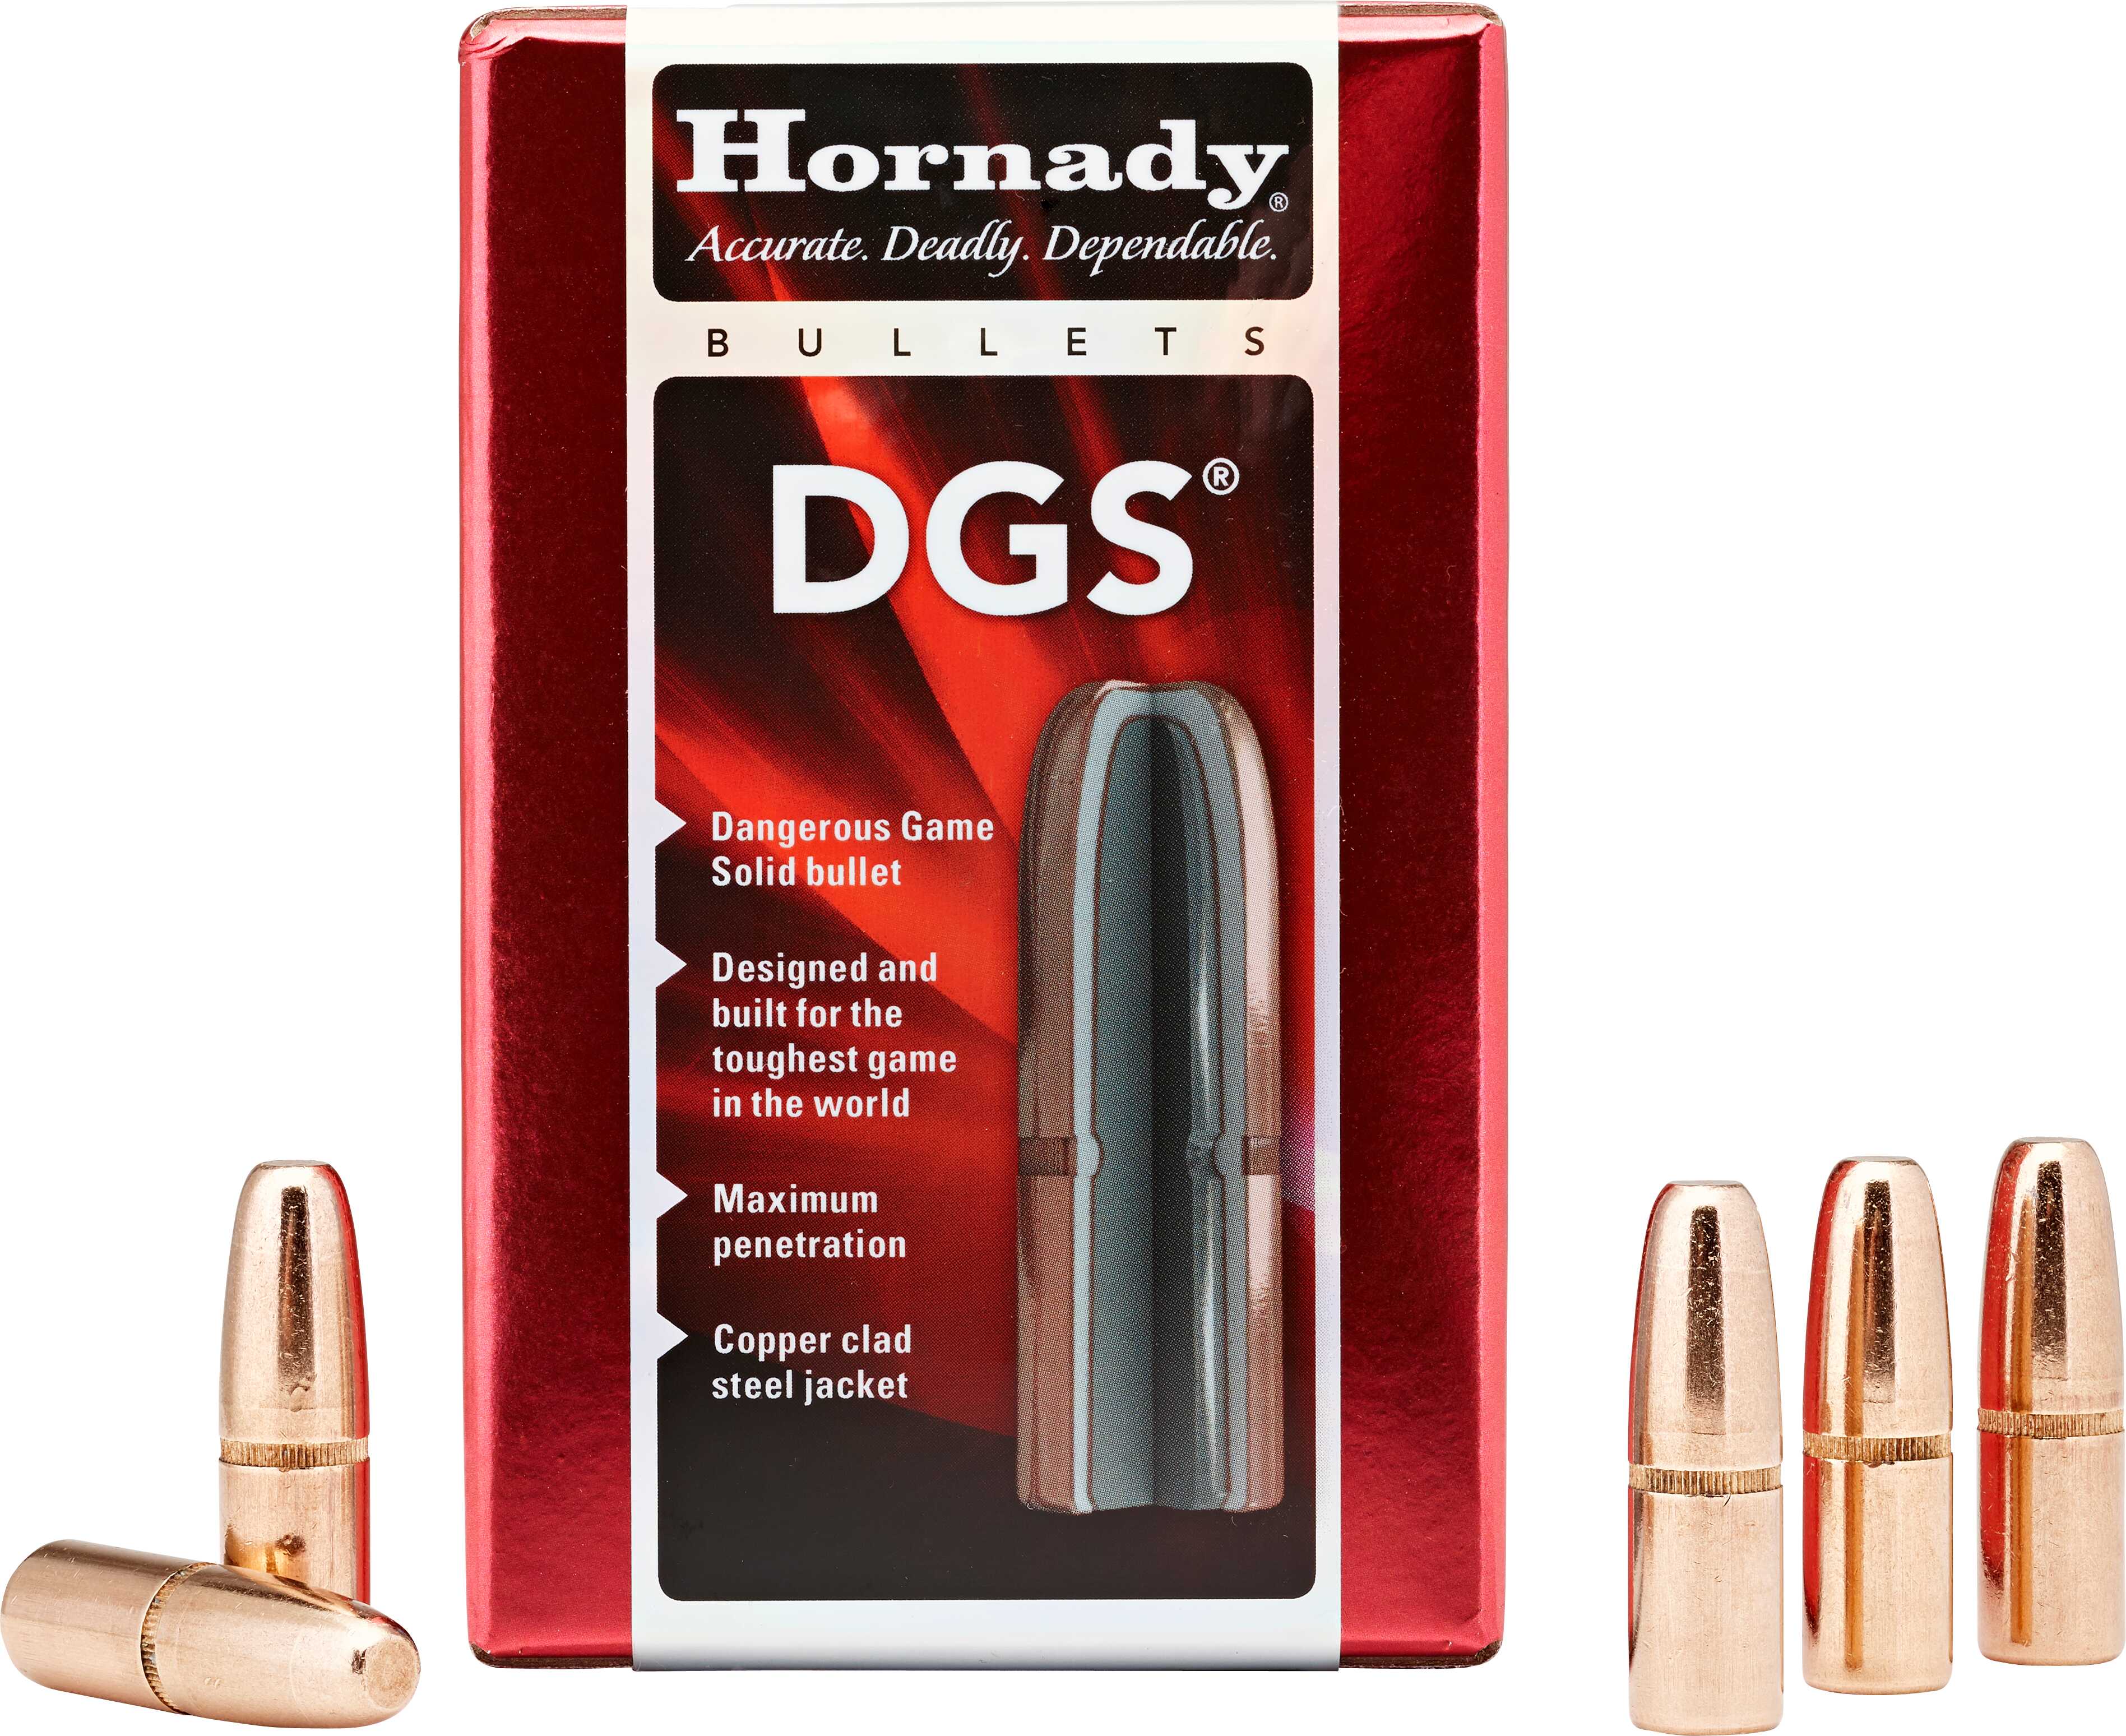 Hornady Bullet, 470 Caliber .474 500 Grain Dgs, Rds